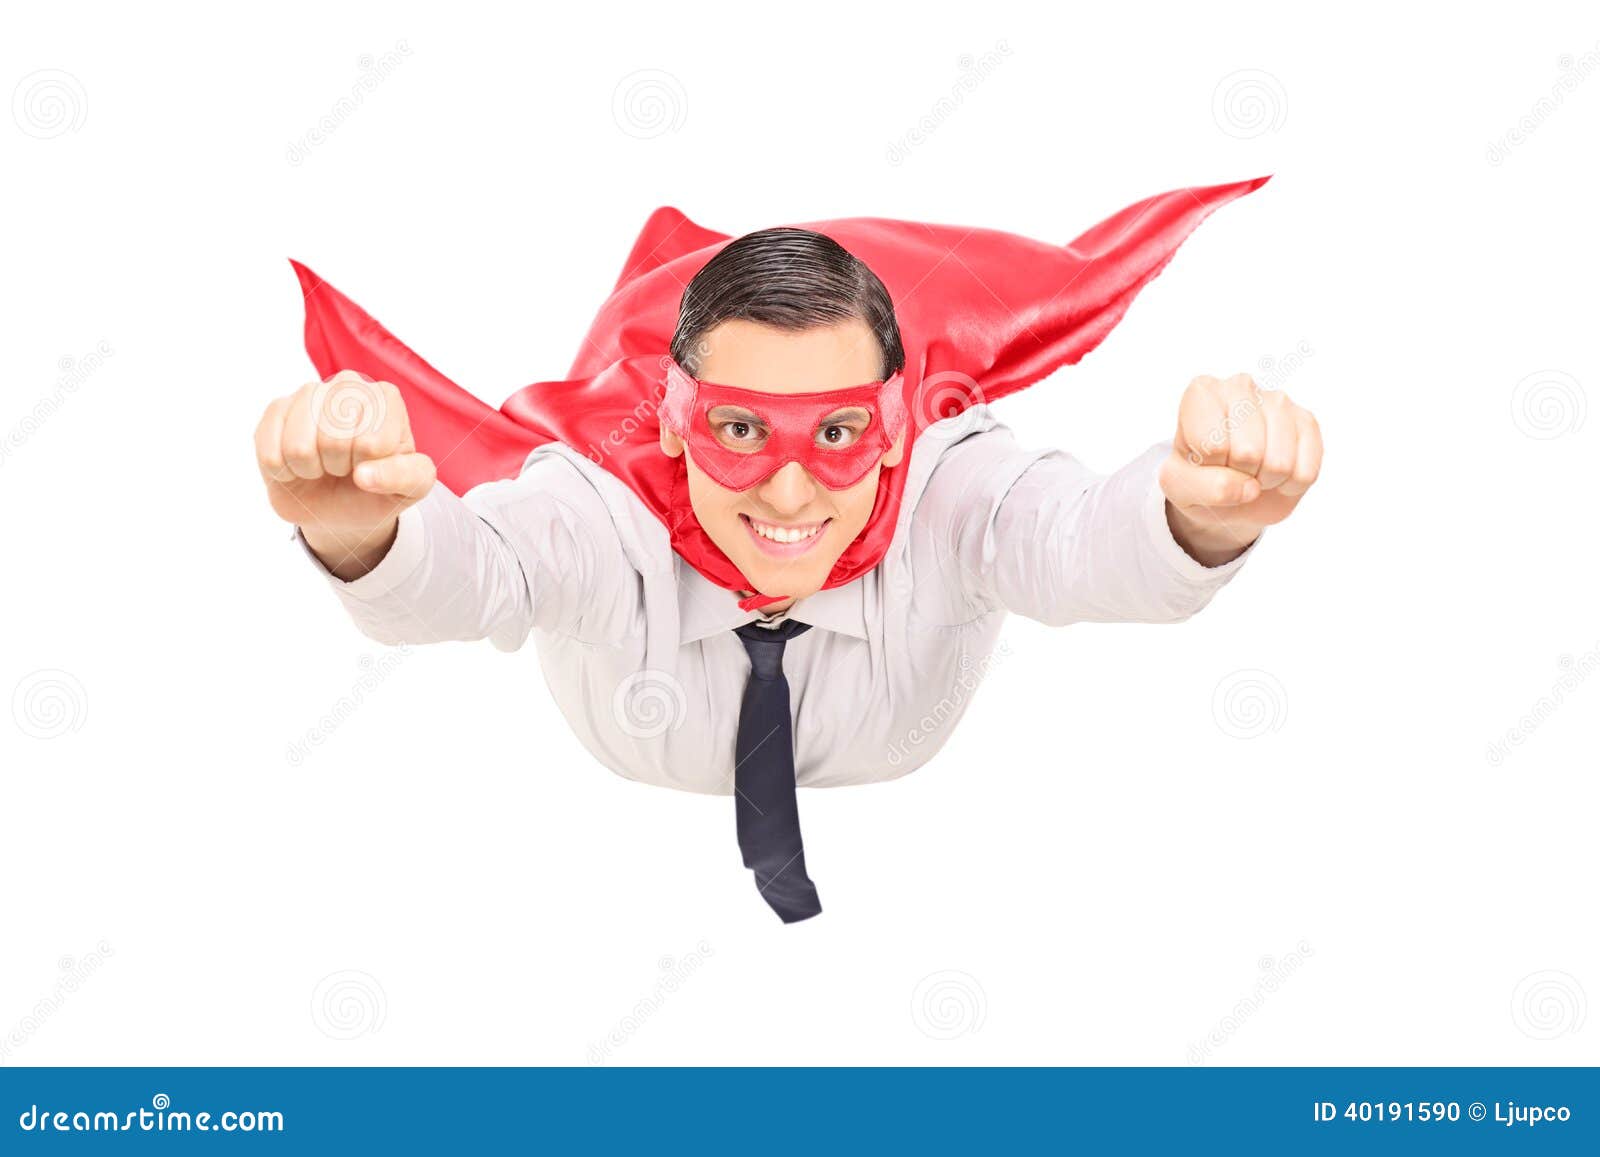 Superheld mit rotem Kapfliegen lokalisiert auf weißem Hintergrund